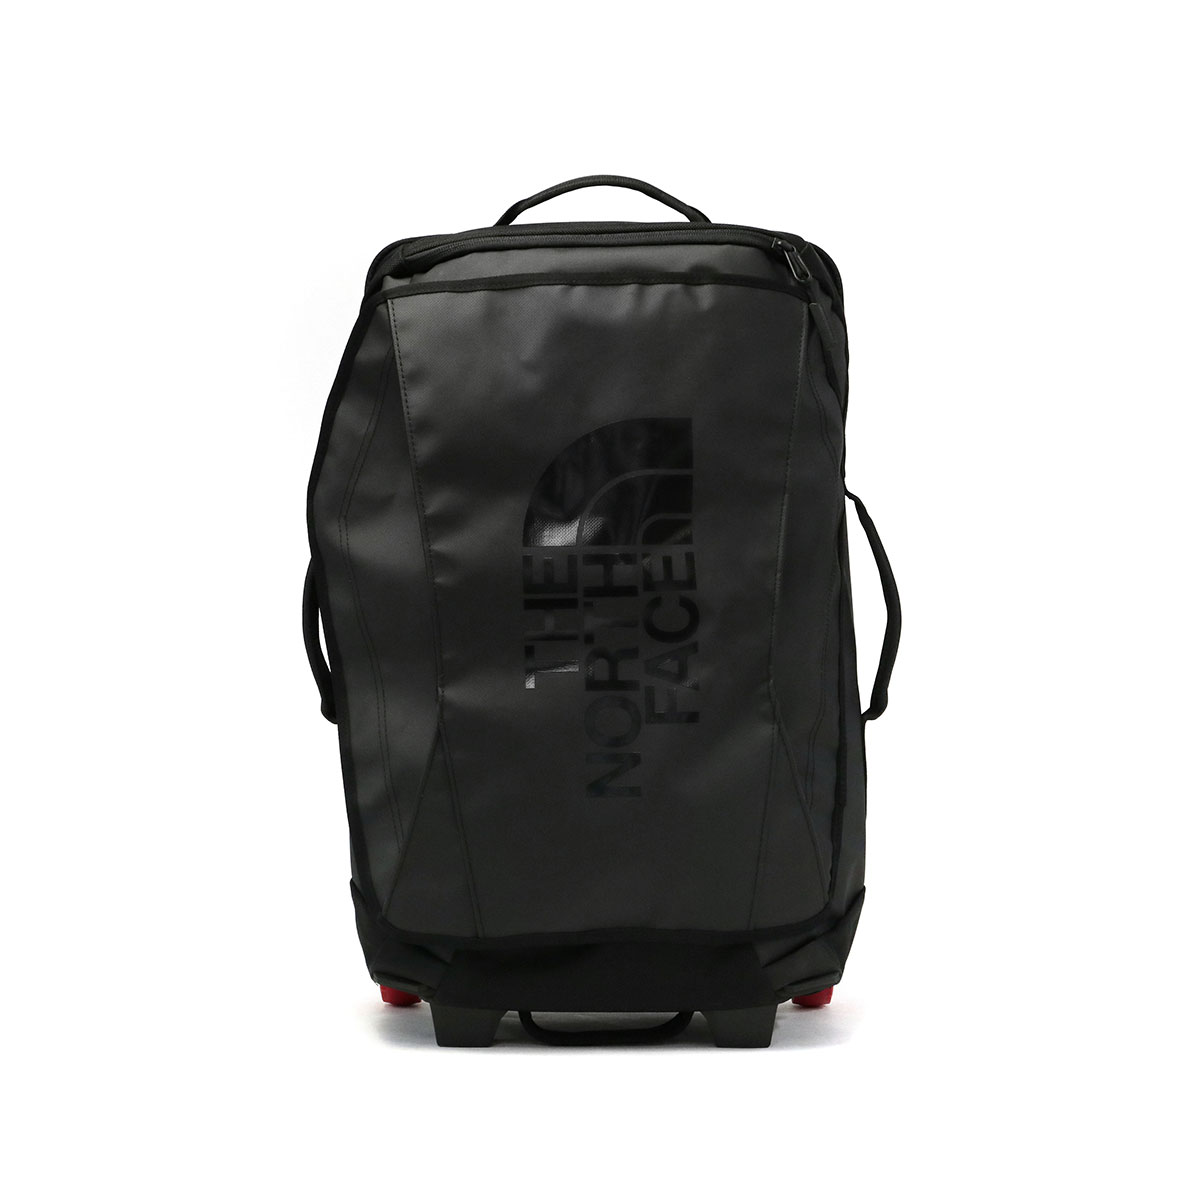 日本正規品 ザ・ノース・フェイス キャリーバッグ スーツケース ソフトキャリー Sサイズ THE NORTH FACE 40L メンズ レディース  NM82377